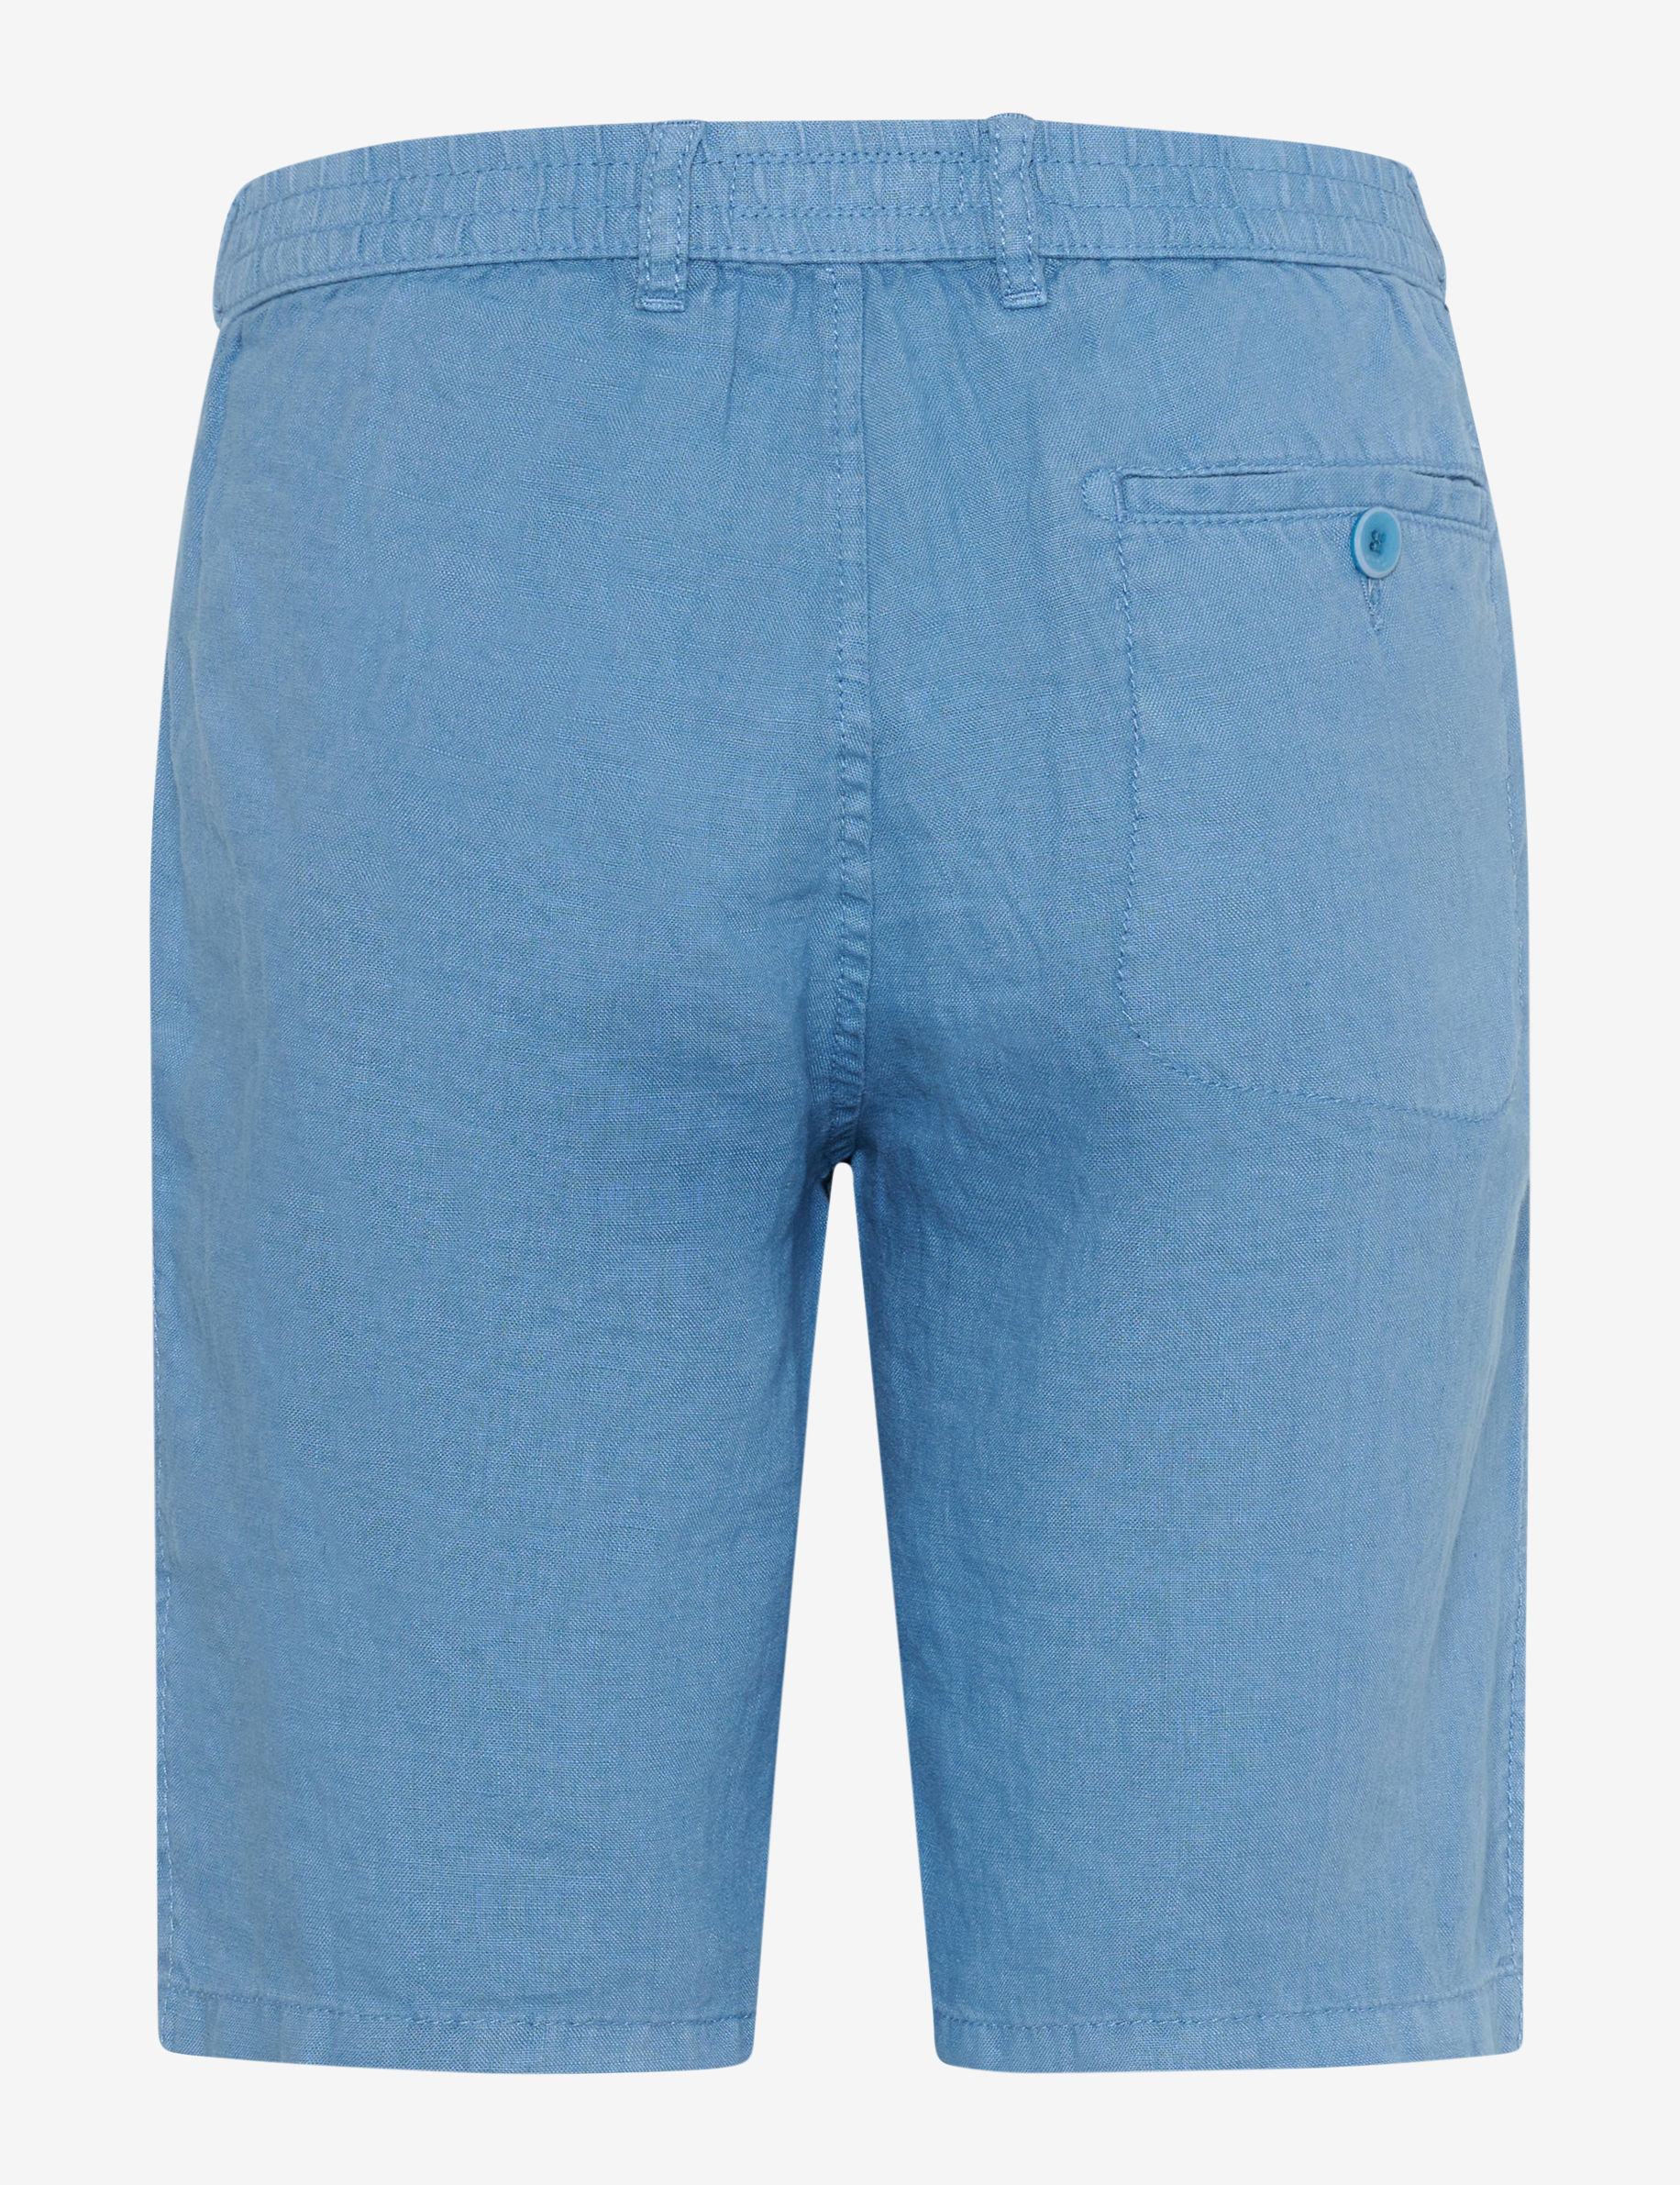 Men Style BALU DUSTY BLUE Modern Fit Stand-alone rear view